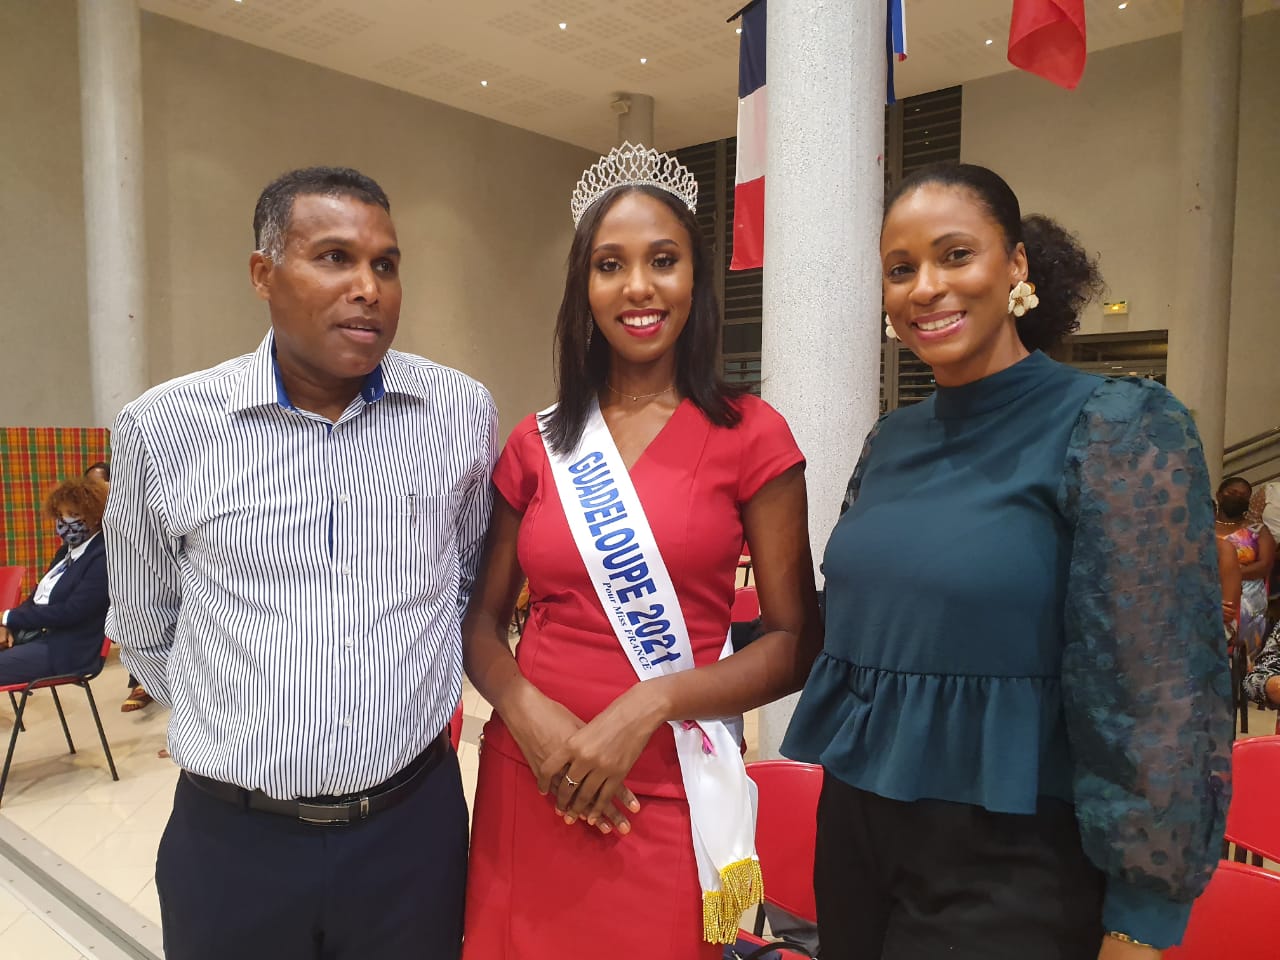     Miss Guadeloupe se prépare pour Miss France

